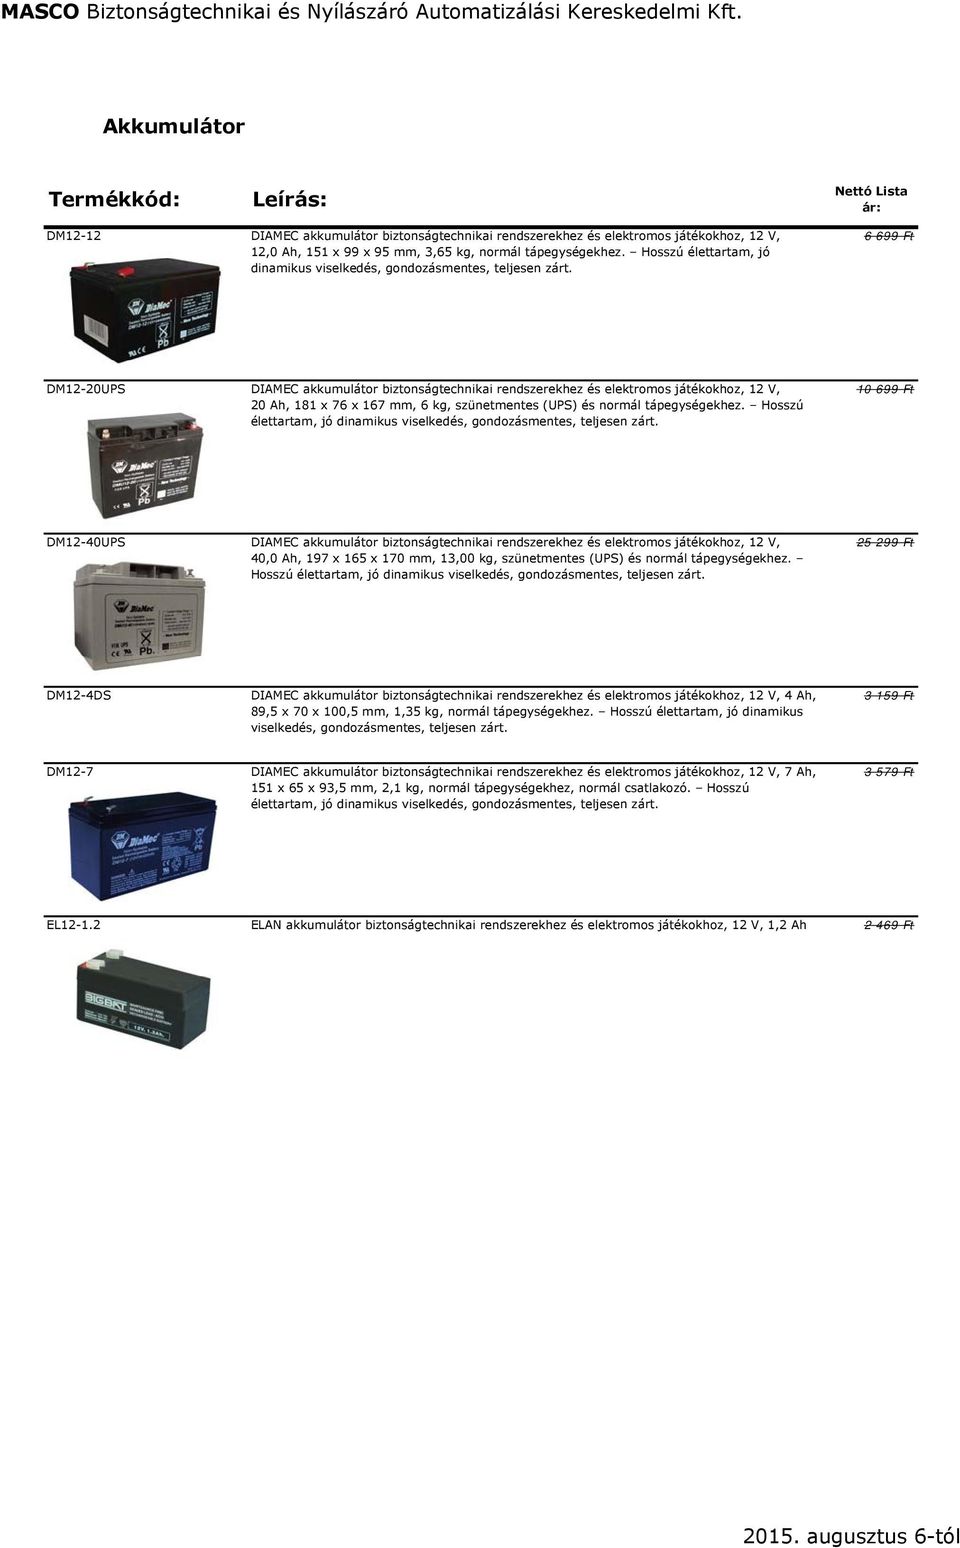 6 699 Ft DM12-20UPS DIAMEC akkumulátor biztonságtechnikai rendszerekhez és elektromos játékokhoz, 12 V, 20 Ah, 181 x 76 x 167 mm, 6 kg, szünetmentes (UPS) és normál tápegységekhez.